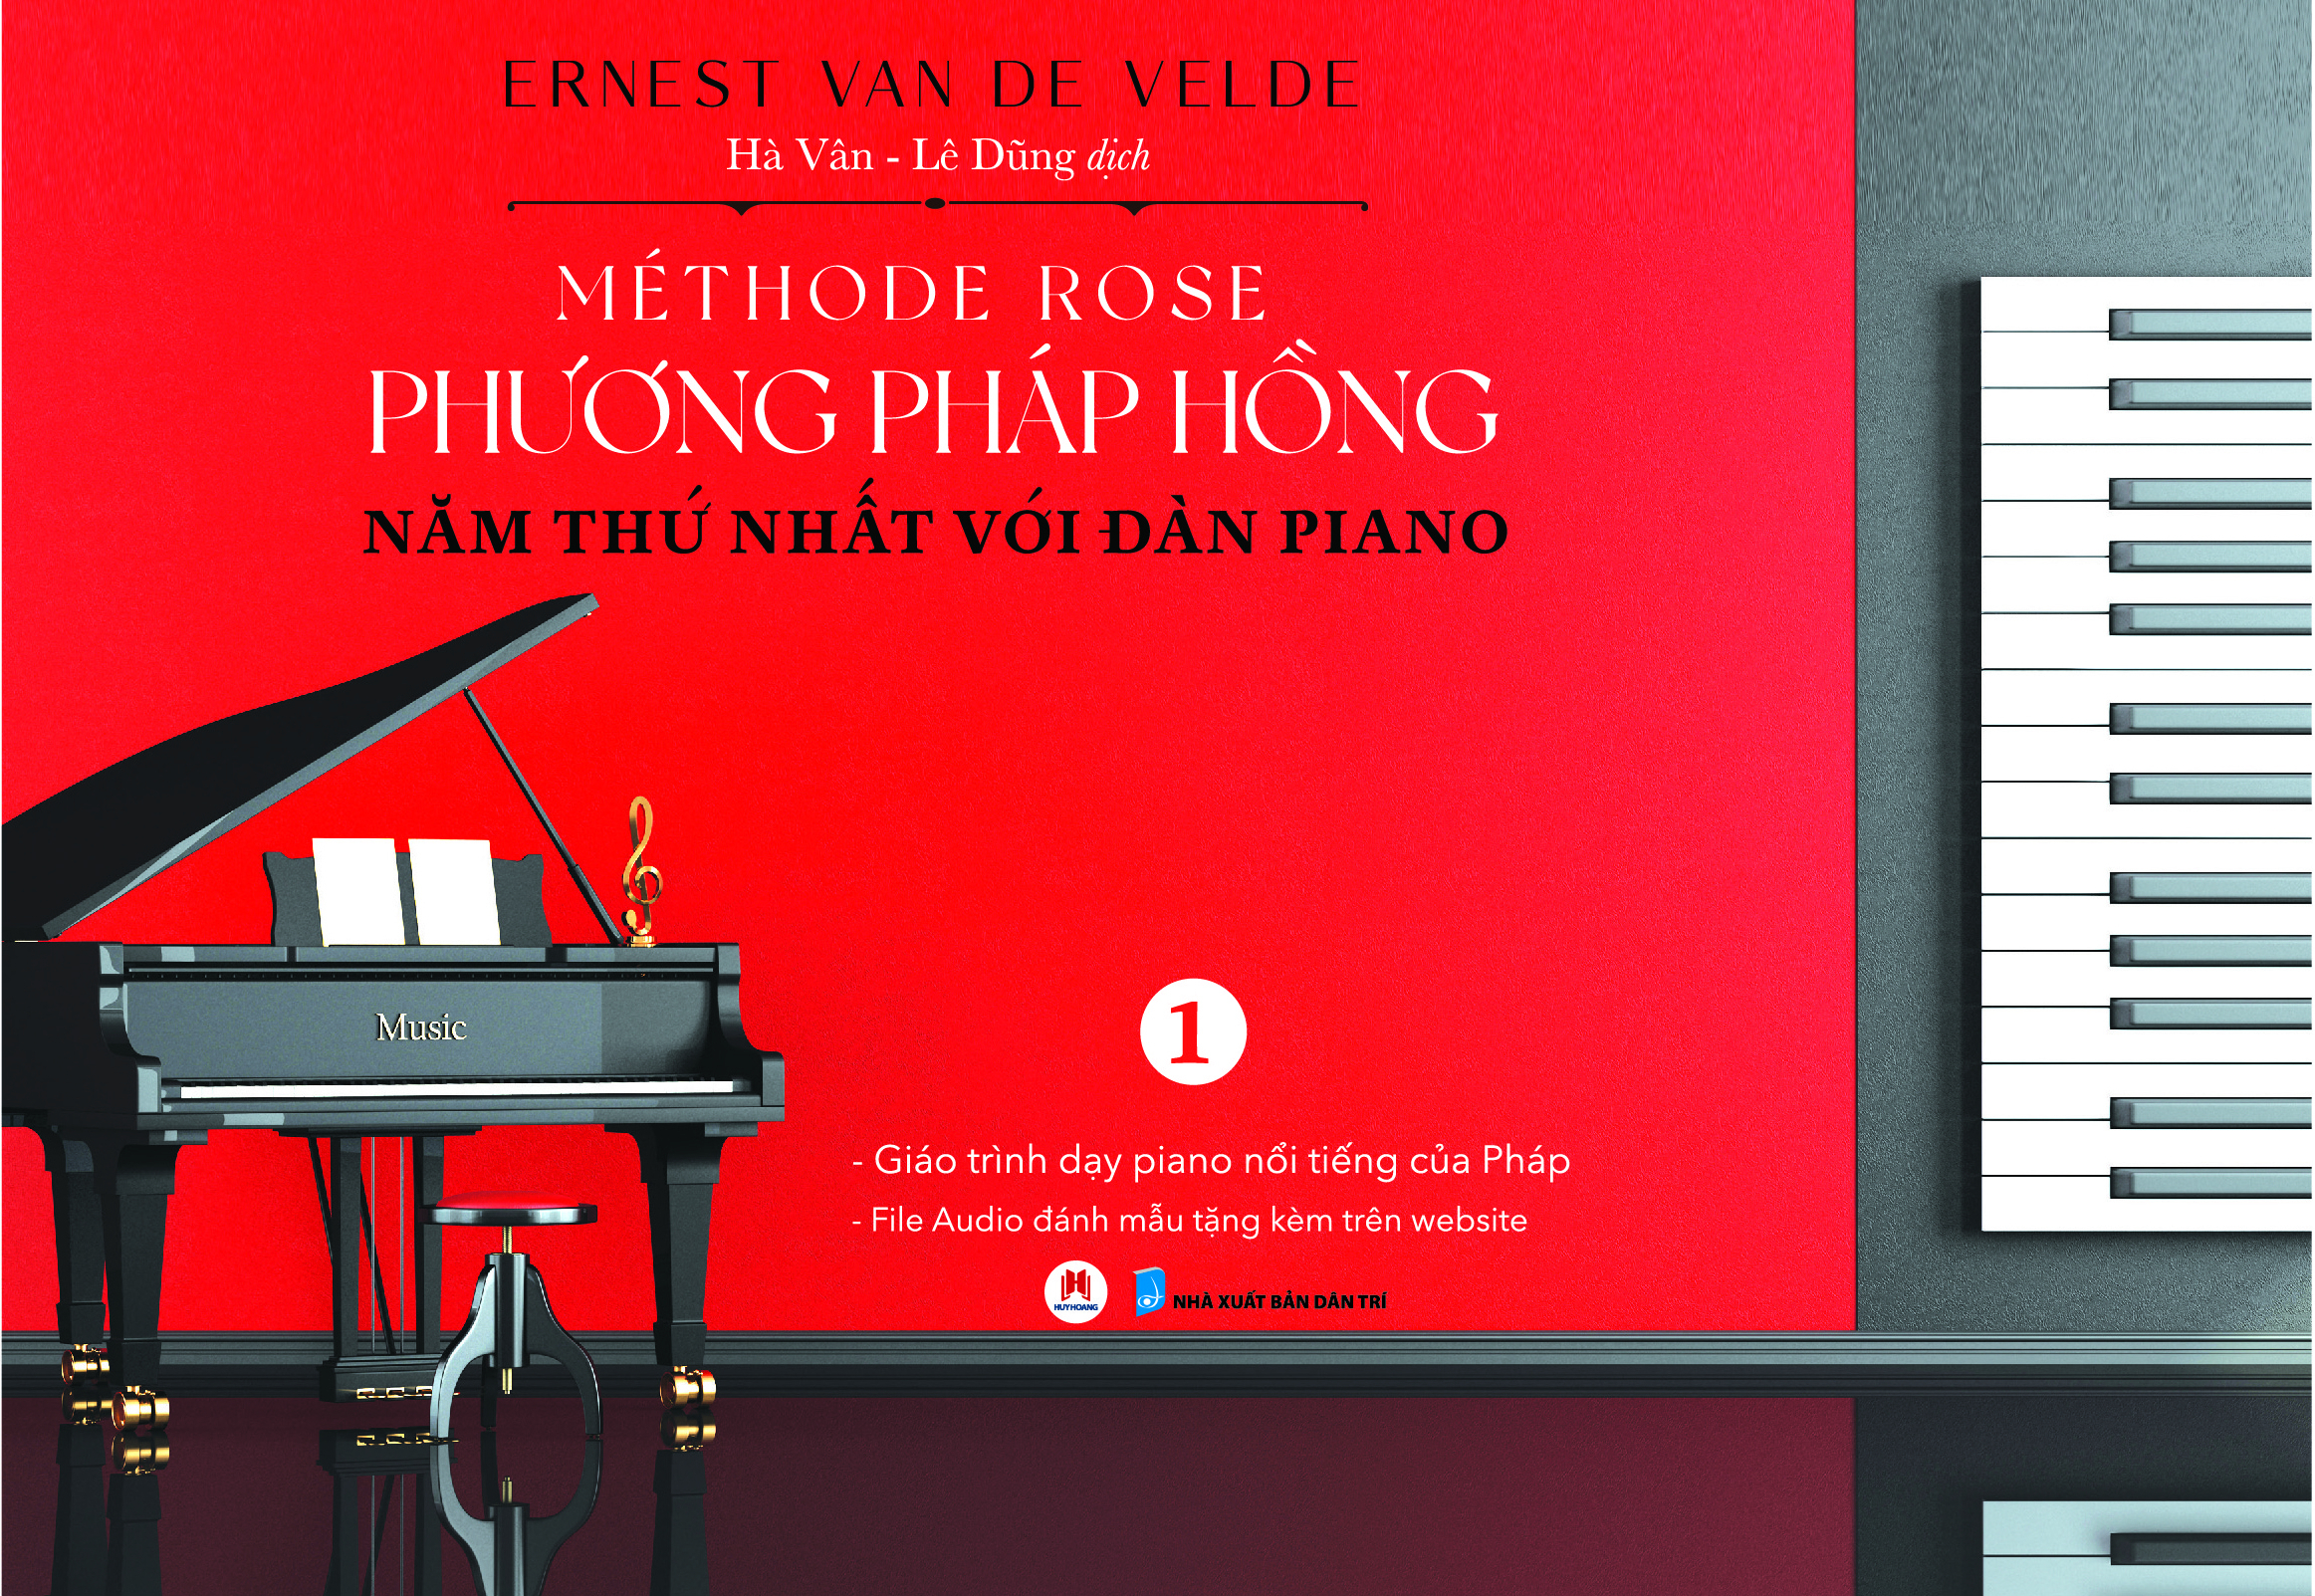 Méthode Rose - Phương Pháp Hồng 1 - Năm Thứ Nhất Với Đàn Piano PDF